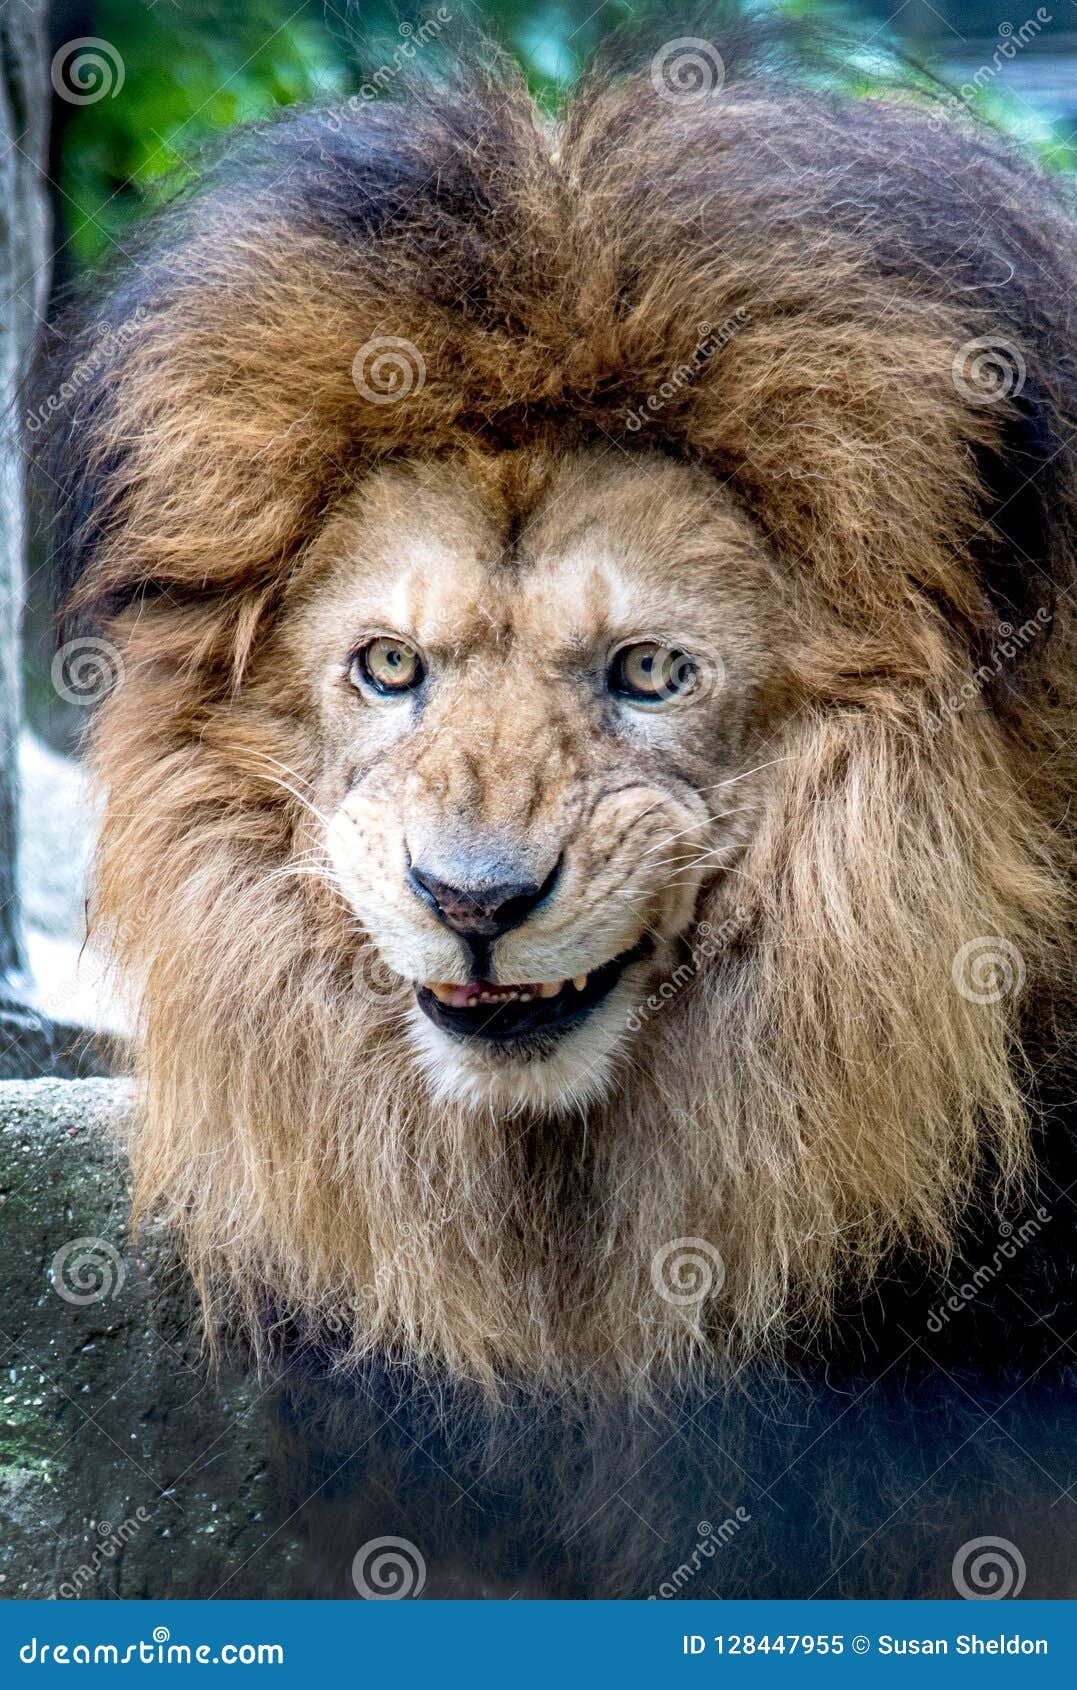 happy-smiling-lion-portrait-128447955.jpg